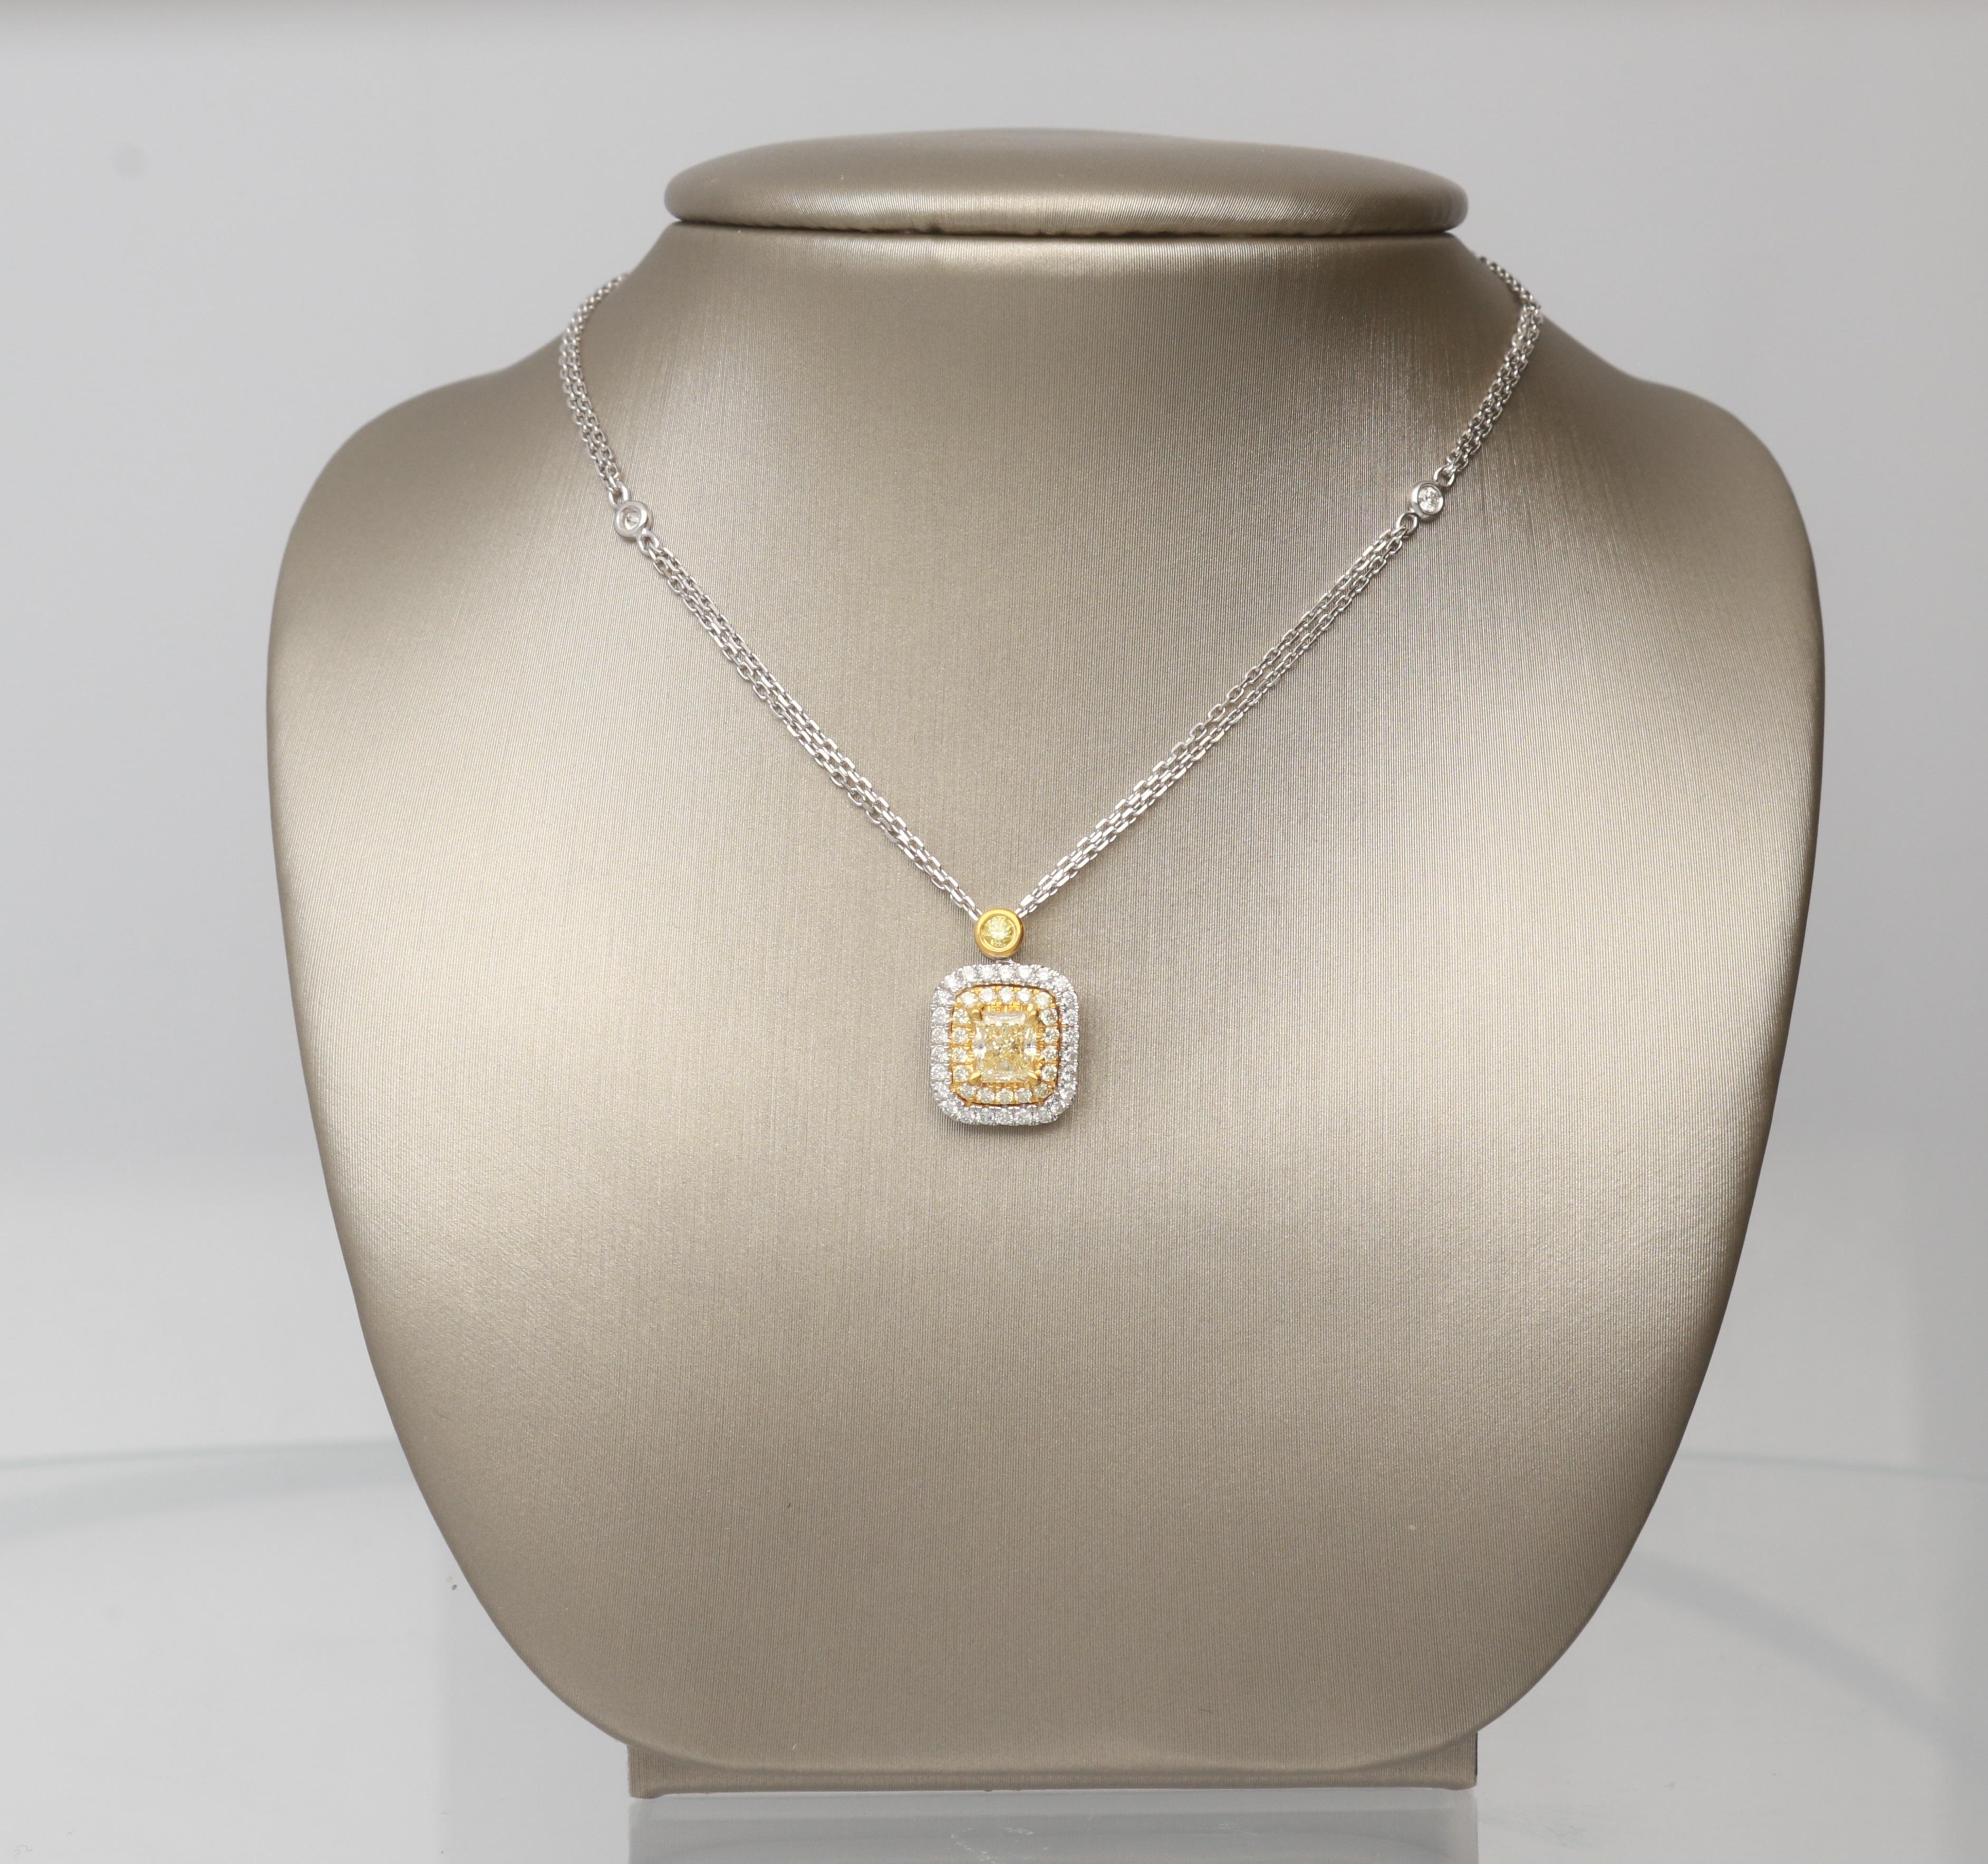 Diese wunderschöne Halskette ist aus 18 Karat zweifarbigem Gold gefertigt und verfügt über einen gelben Diamanten mit Kissenschliff von 1/2 Karat, umgeben von 17 gelben Diamanten von 0,14 Karat und 28 runden Diamanten von 0,21 Karat mit GH- SI